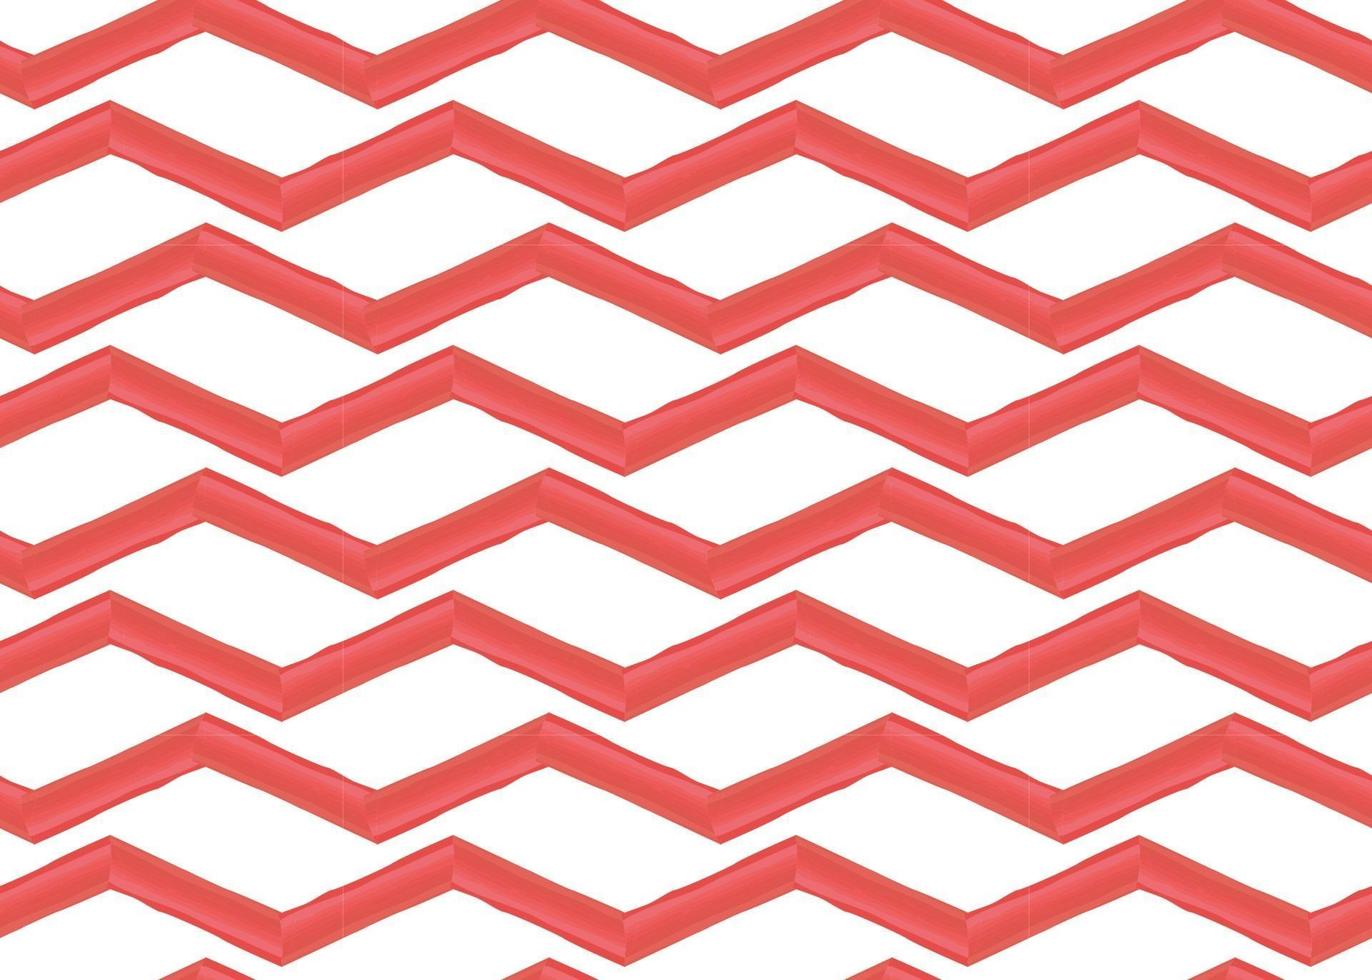 Vektor Textur Hintergrund, nahtloses Muster. handgezeichnete, rote, weiße Farben.